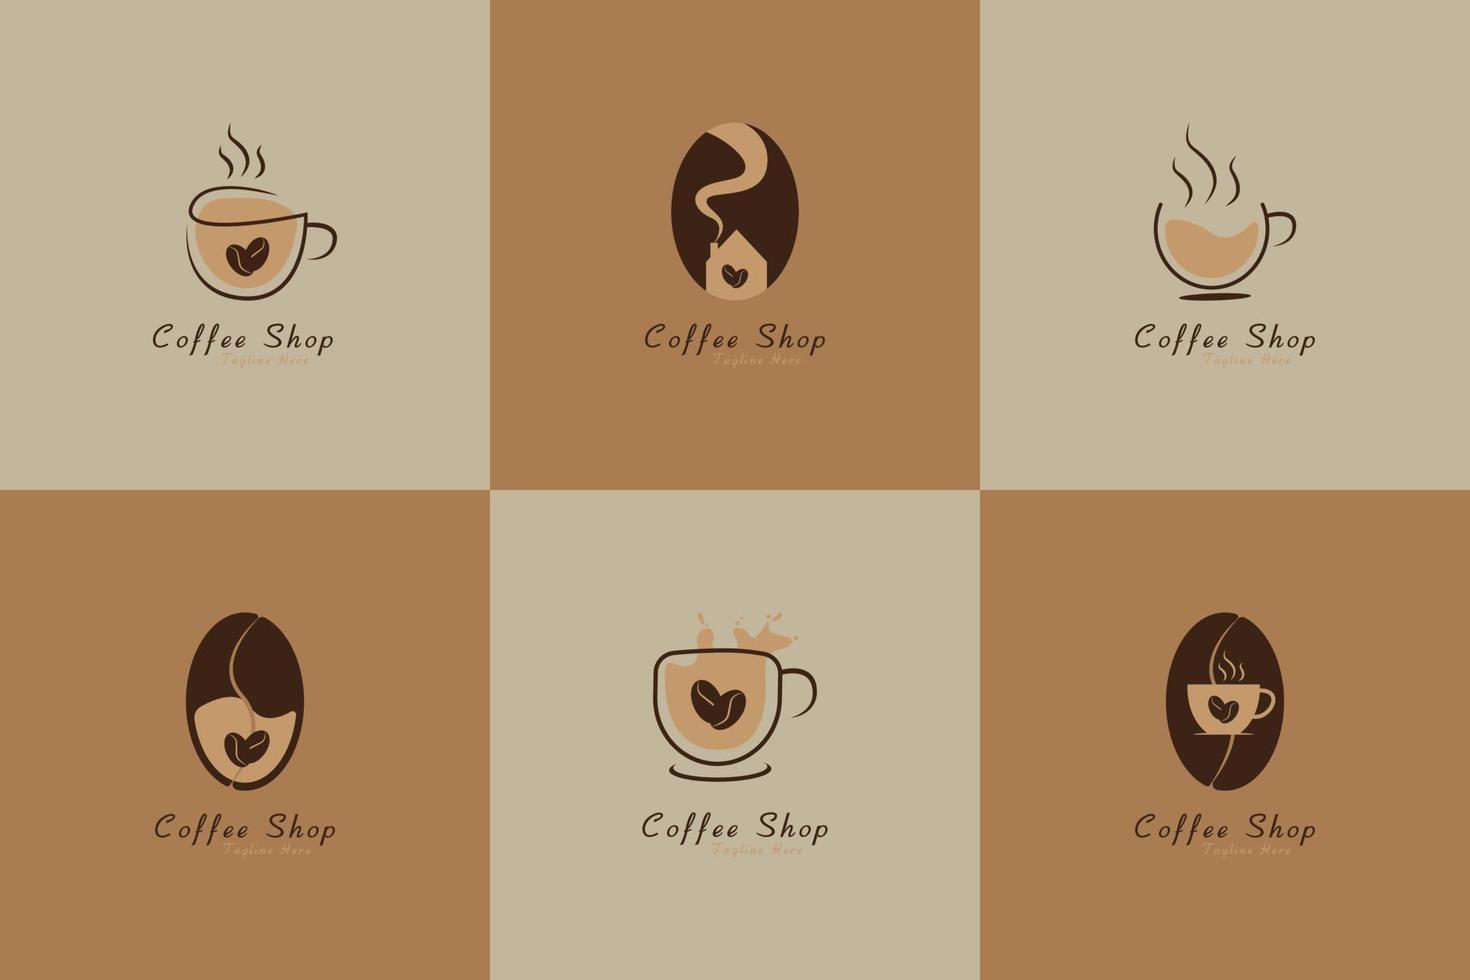 reeks van koffie winkel logo ontwerp sjabloon vector